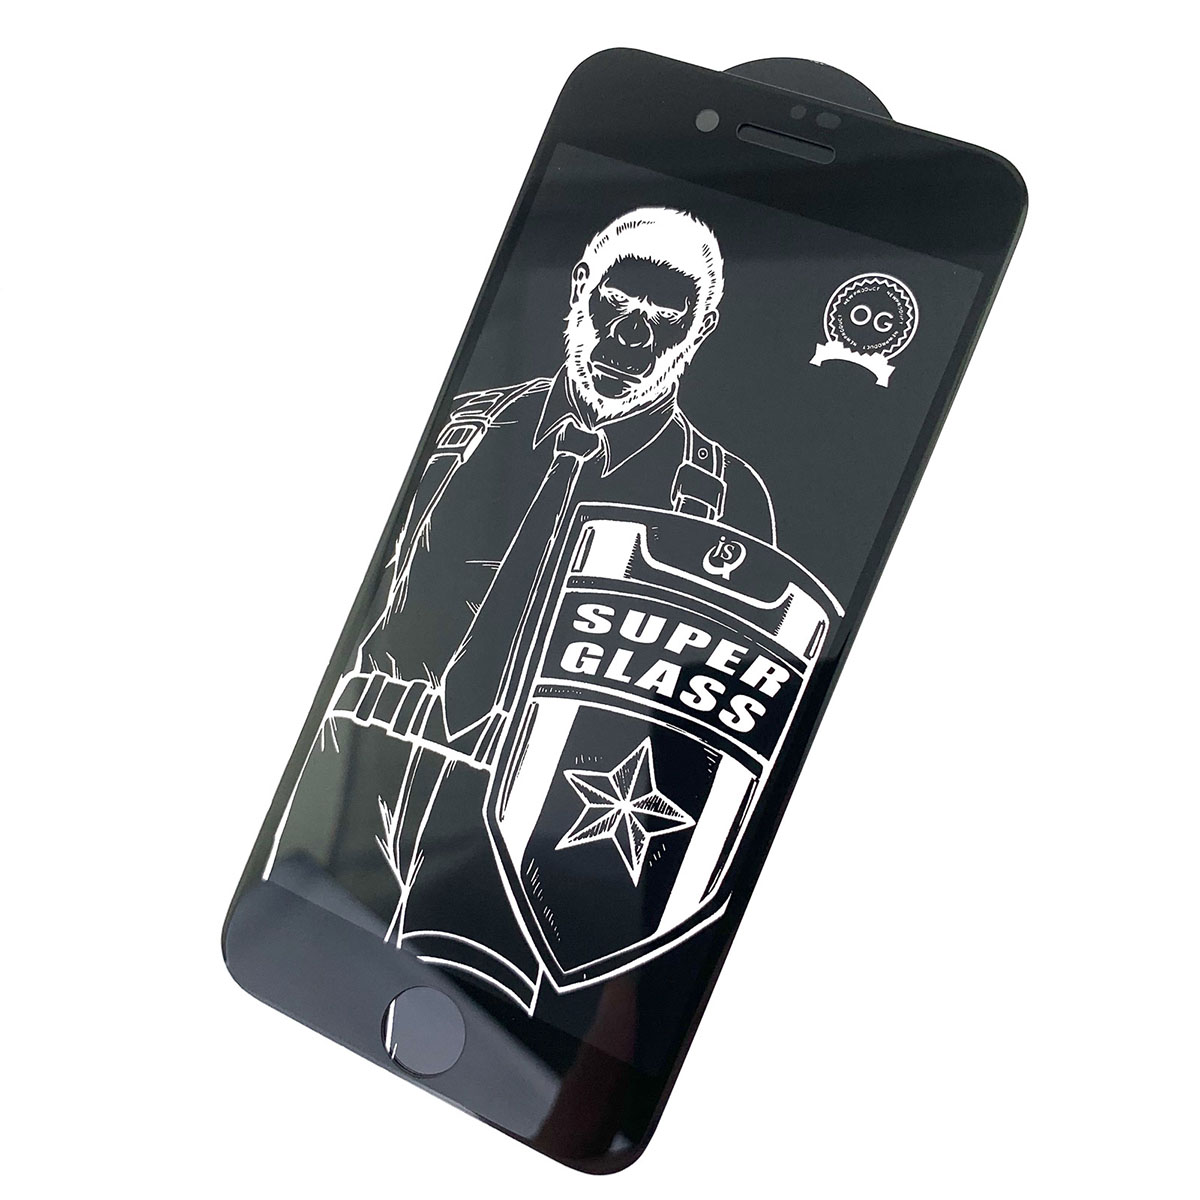 Защитное стекло 5D Super Glass OG для APPLE iPhone 7, iPhone 8, цвет канта черный.